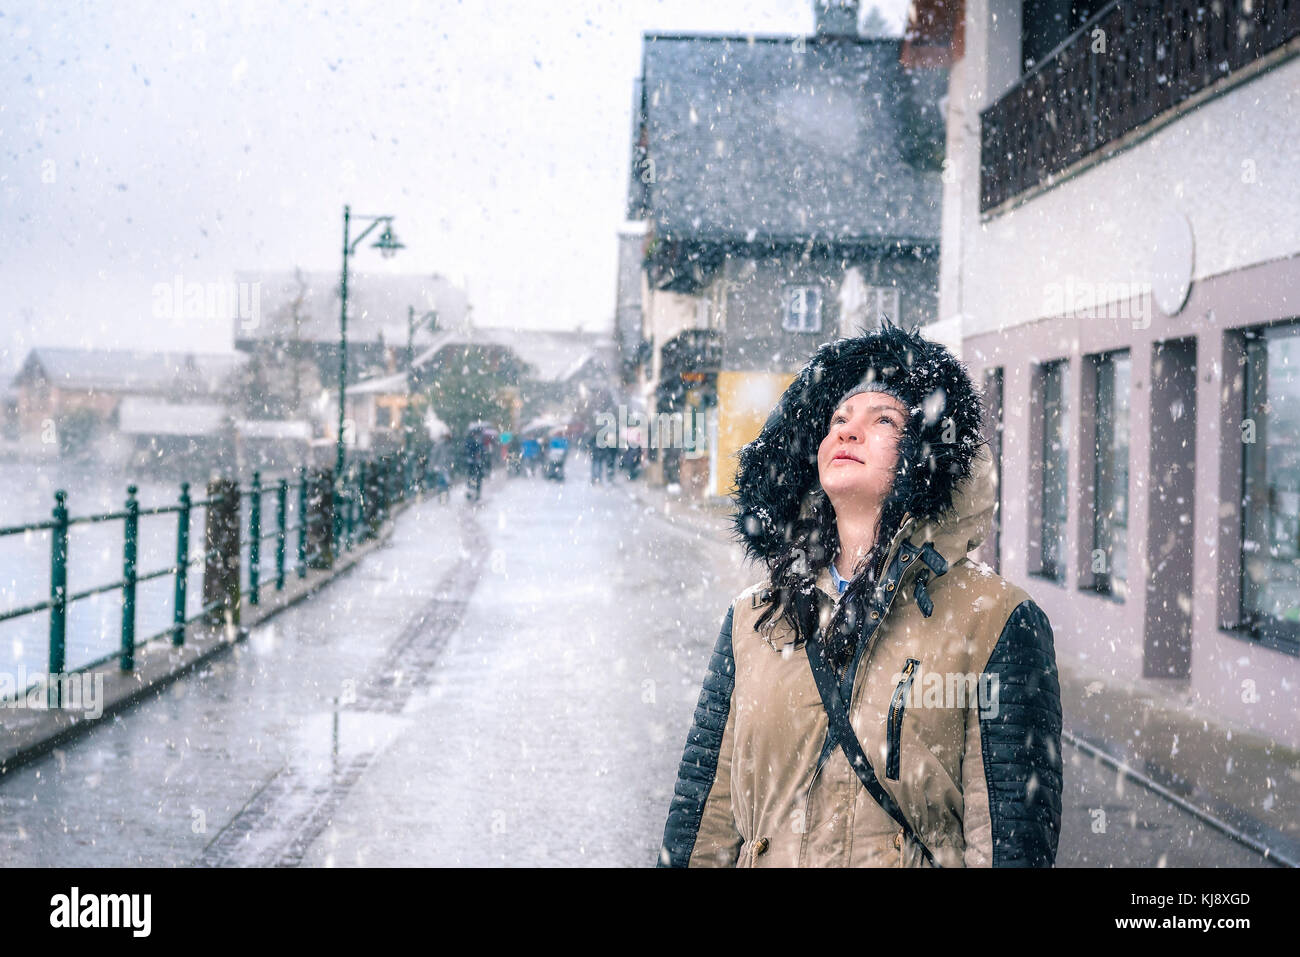 Felice periodo invernale con una bella ragazza godendo la nevicata, guardando il cielo, sulle strade di Hallstatt, uno dei siti del patrimonio mondiale in Foto Stock